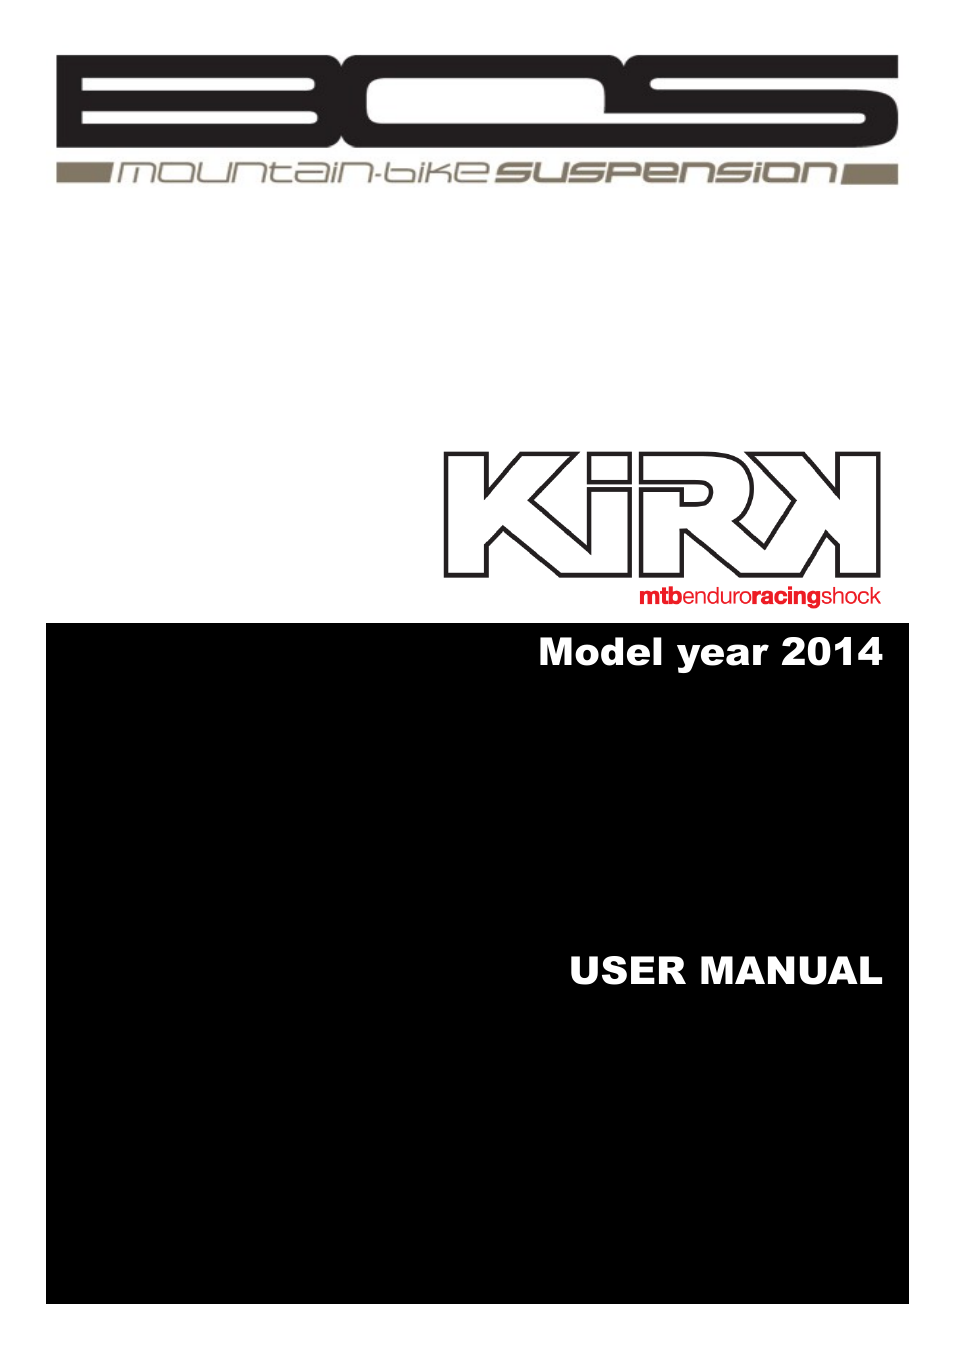 KIRK 2014 User manual